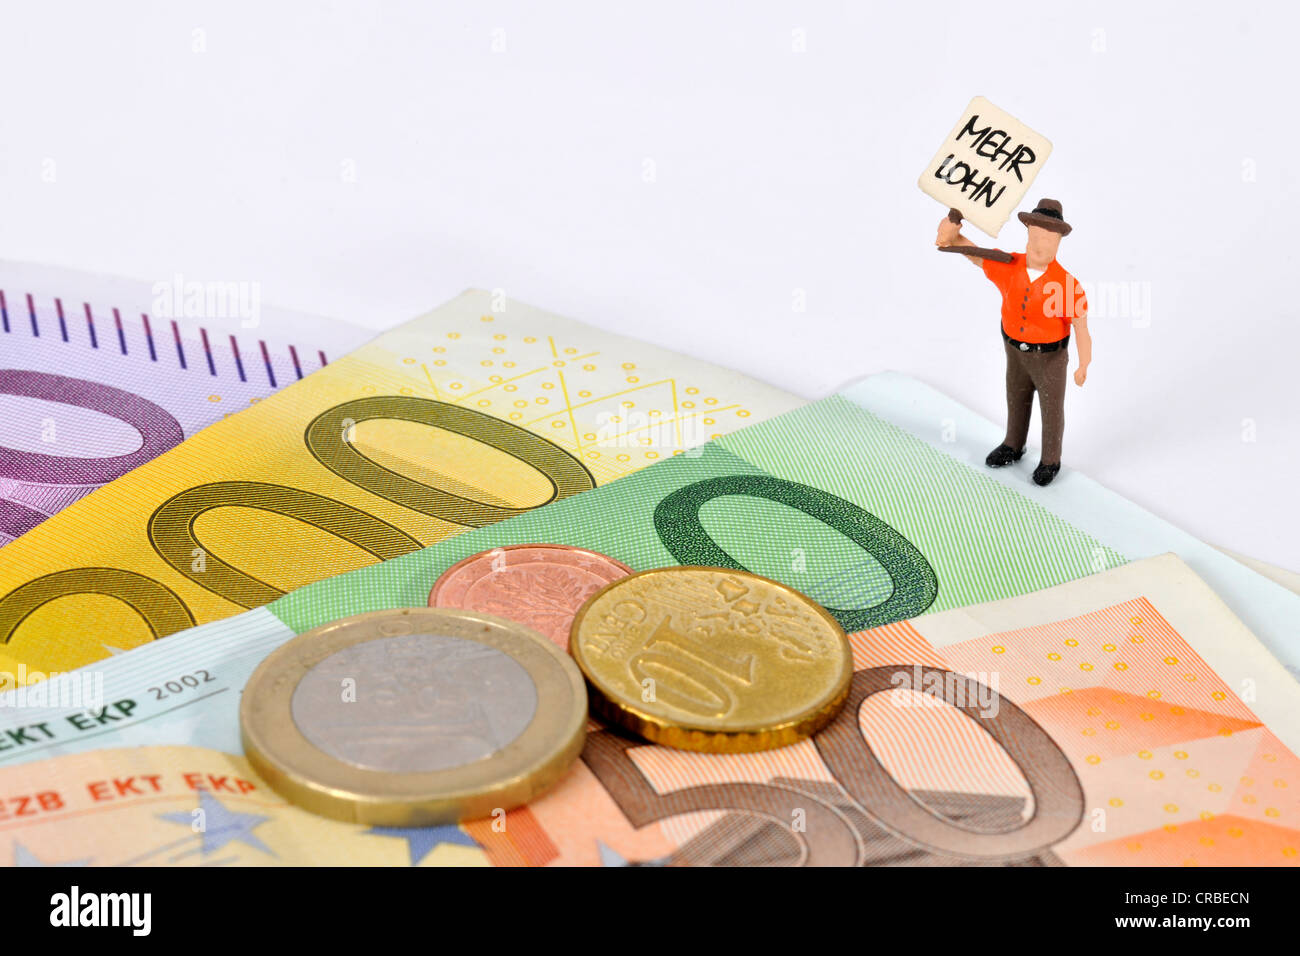 Miniatur-Figur mit einem Schild, Mehr Lohn, Deutsch für mehr zahlen, neben Euro-Banknoten und-Münzen Stockfoto